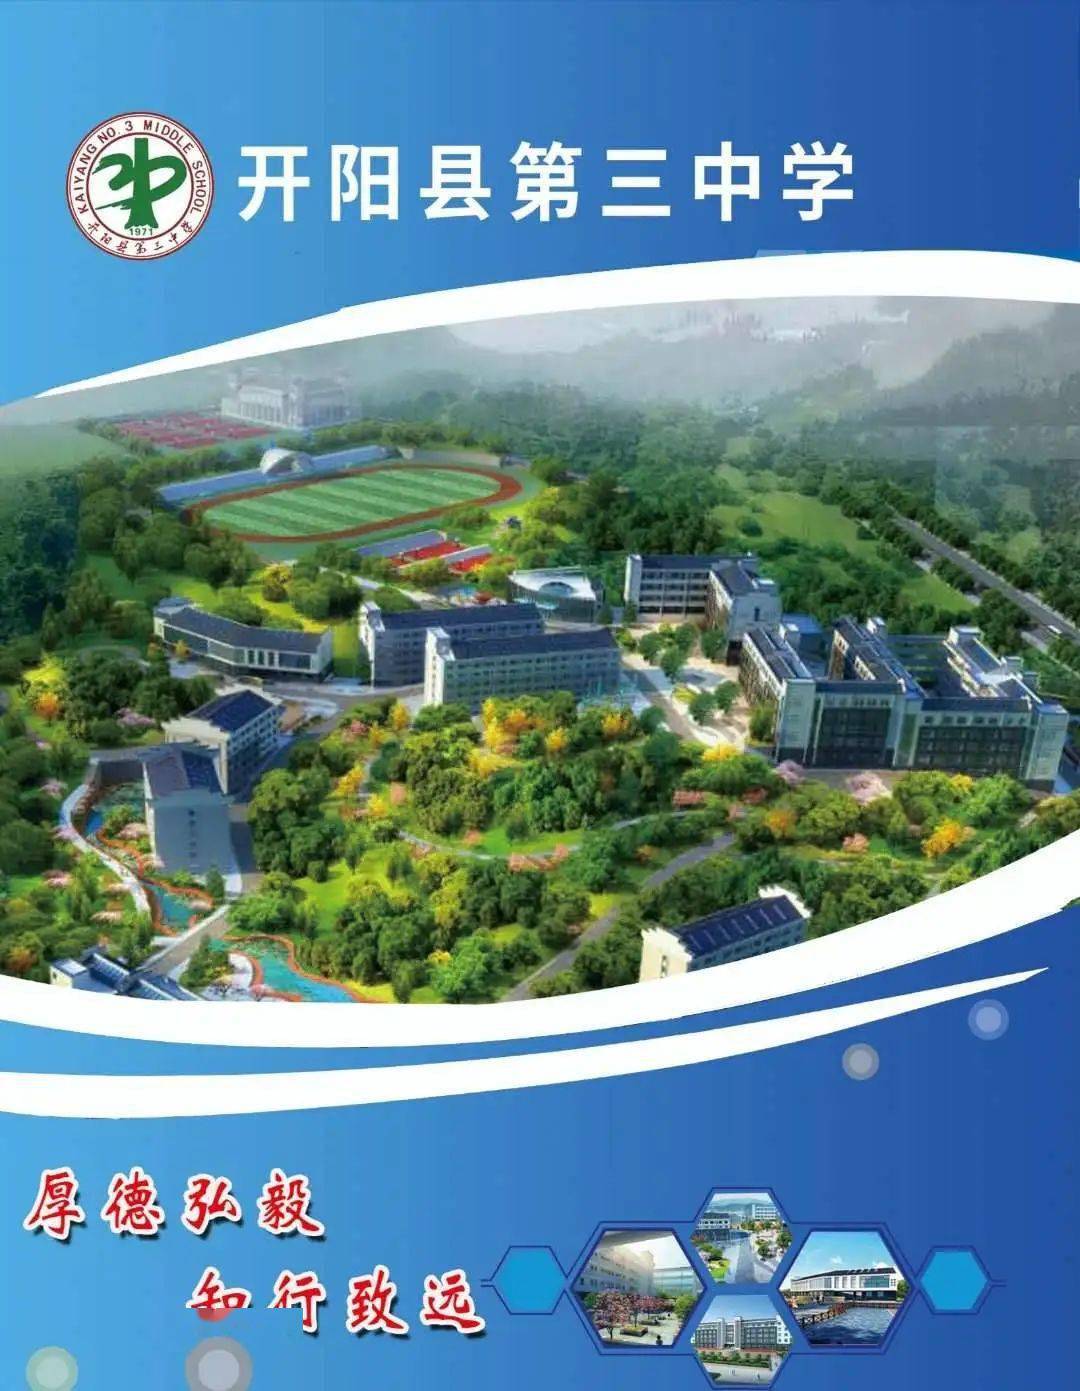 开阳县第三中学新校区来了!校园环境优美,设施完善,全